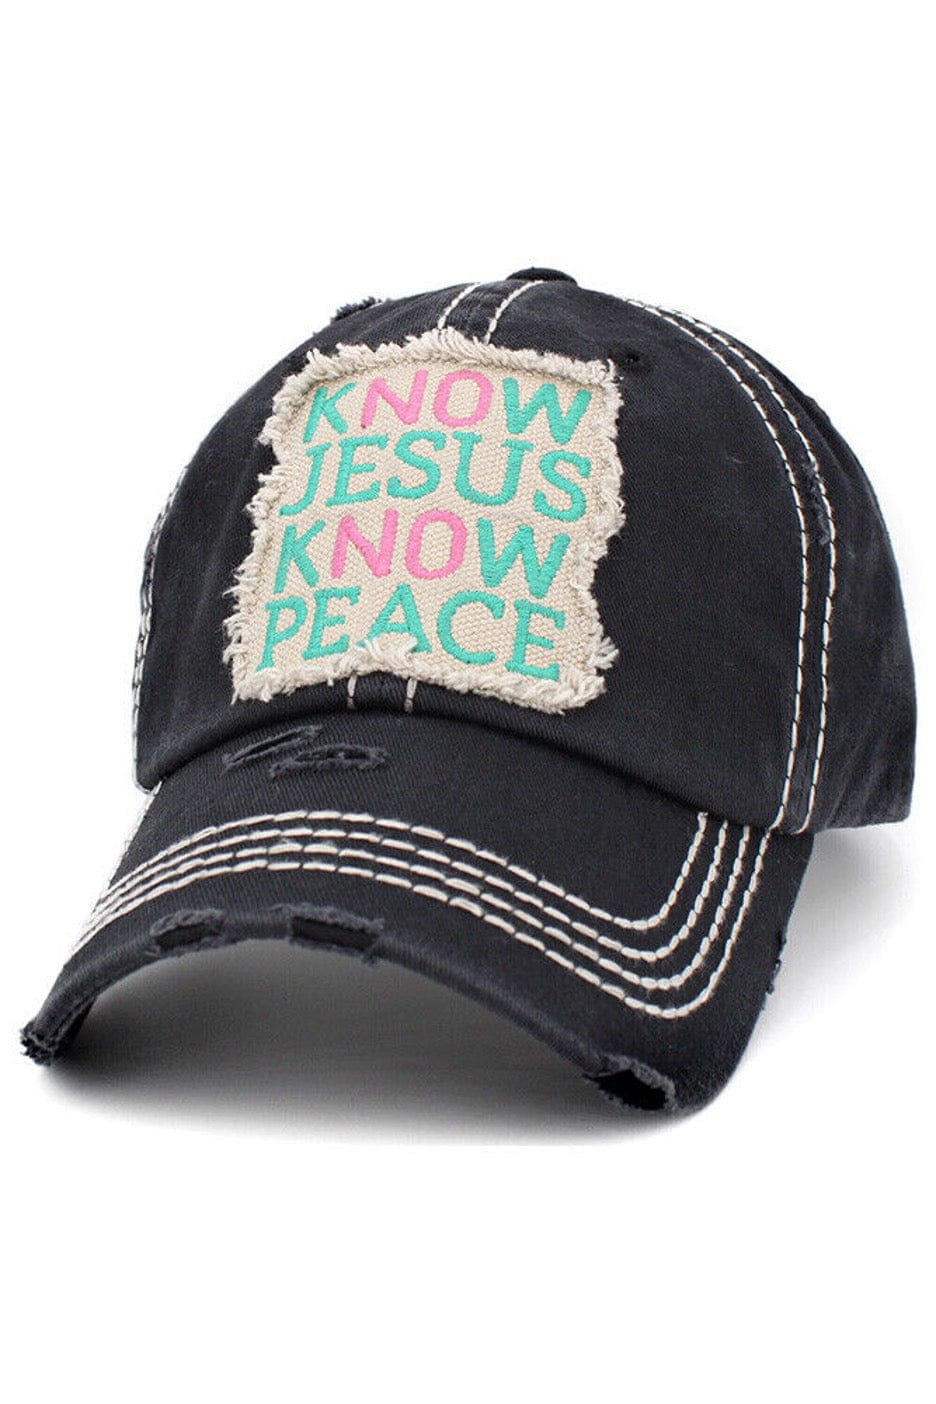 KBETHOS- Jesus Hat - Cowtown Bling N Things